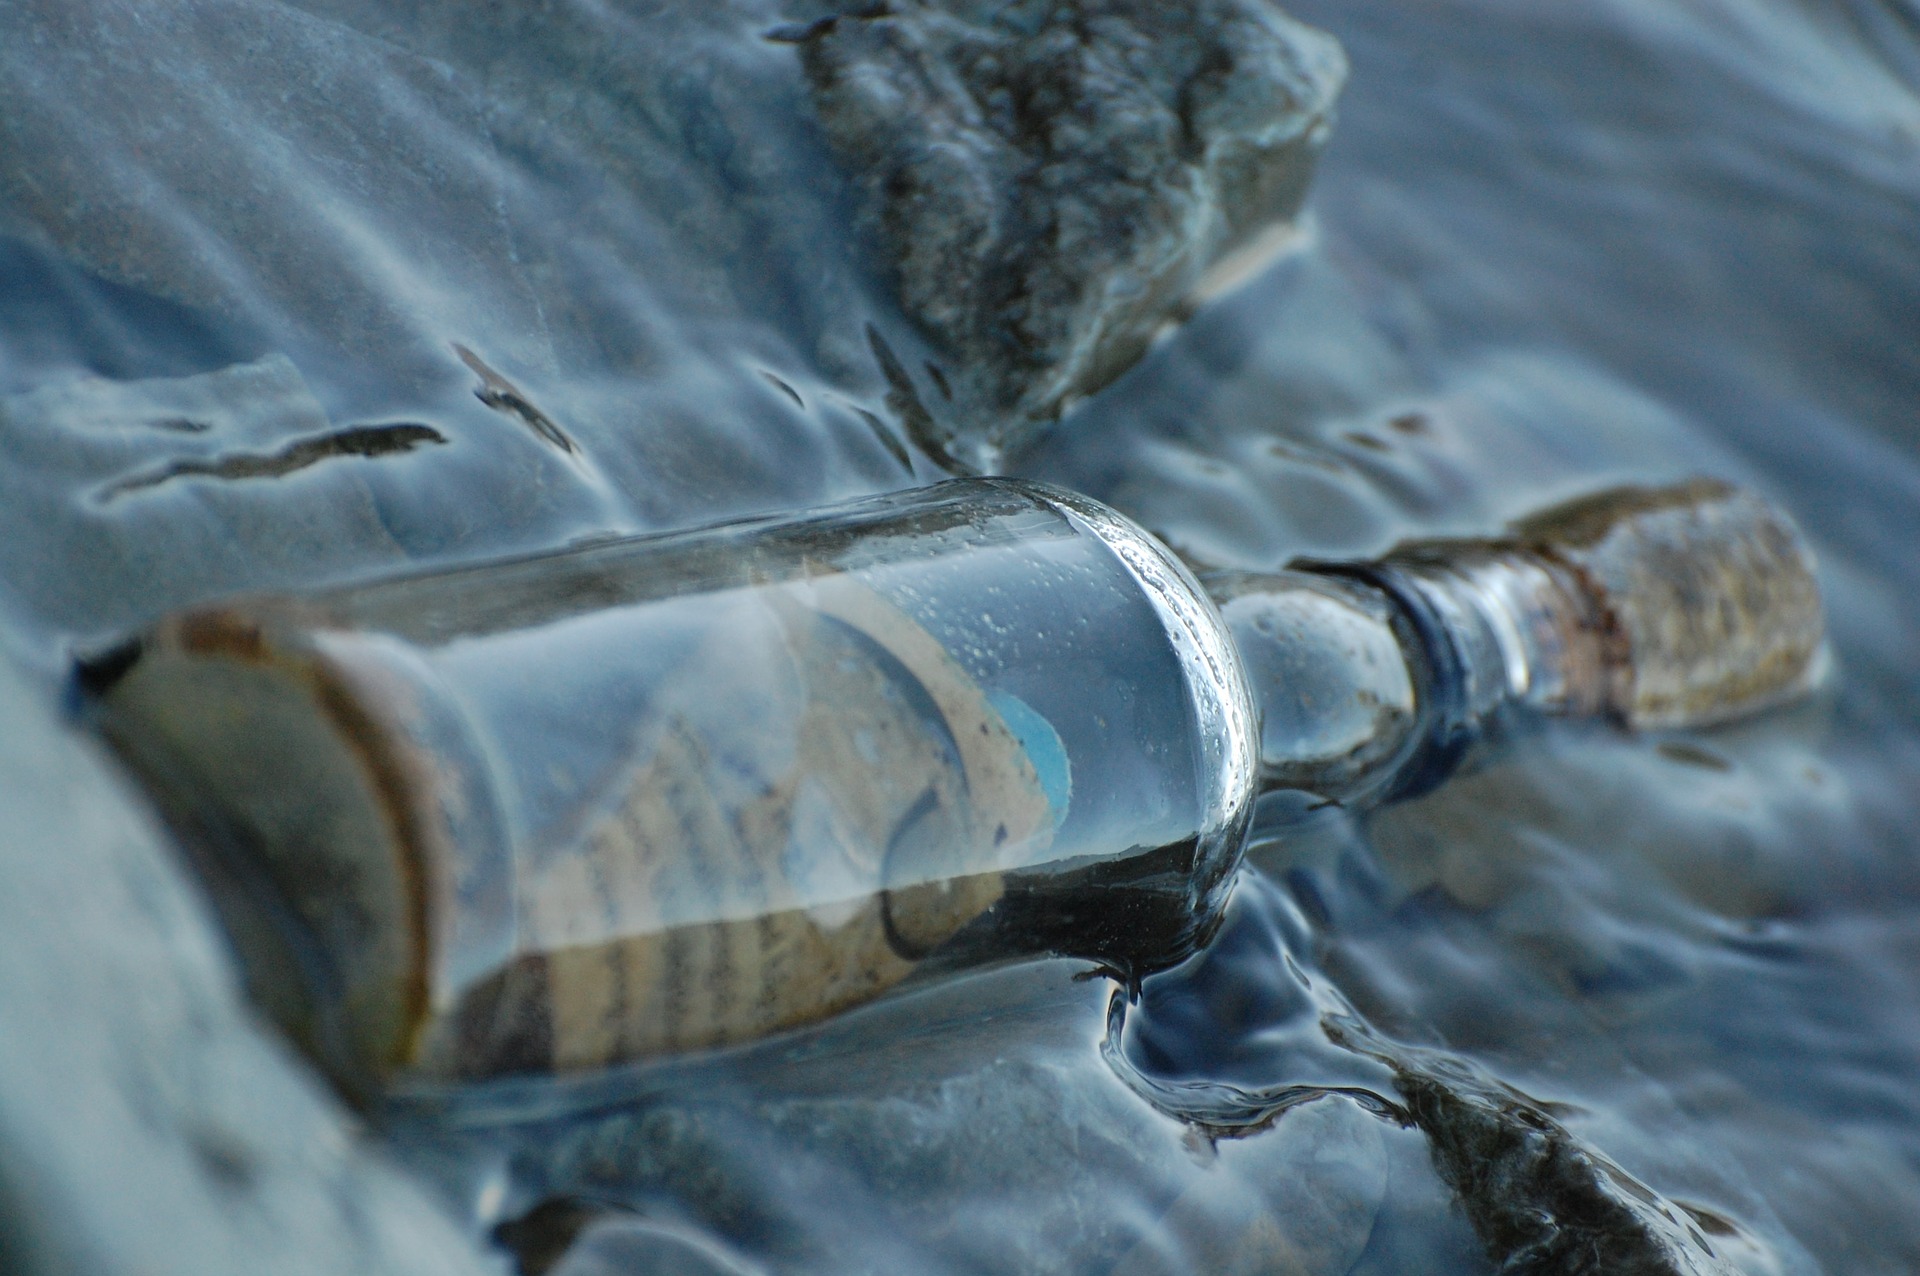 La botella fue descubierta en una playa al norte de Wedge Island, Australia. (Foto Prensa Libre: Pixabay)